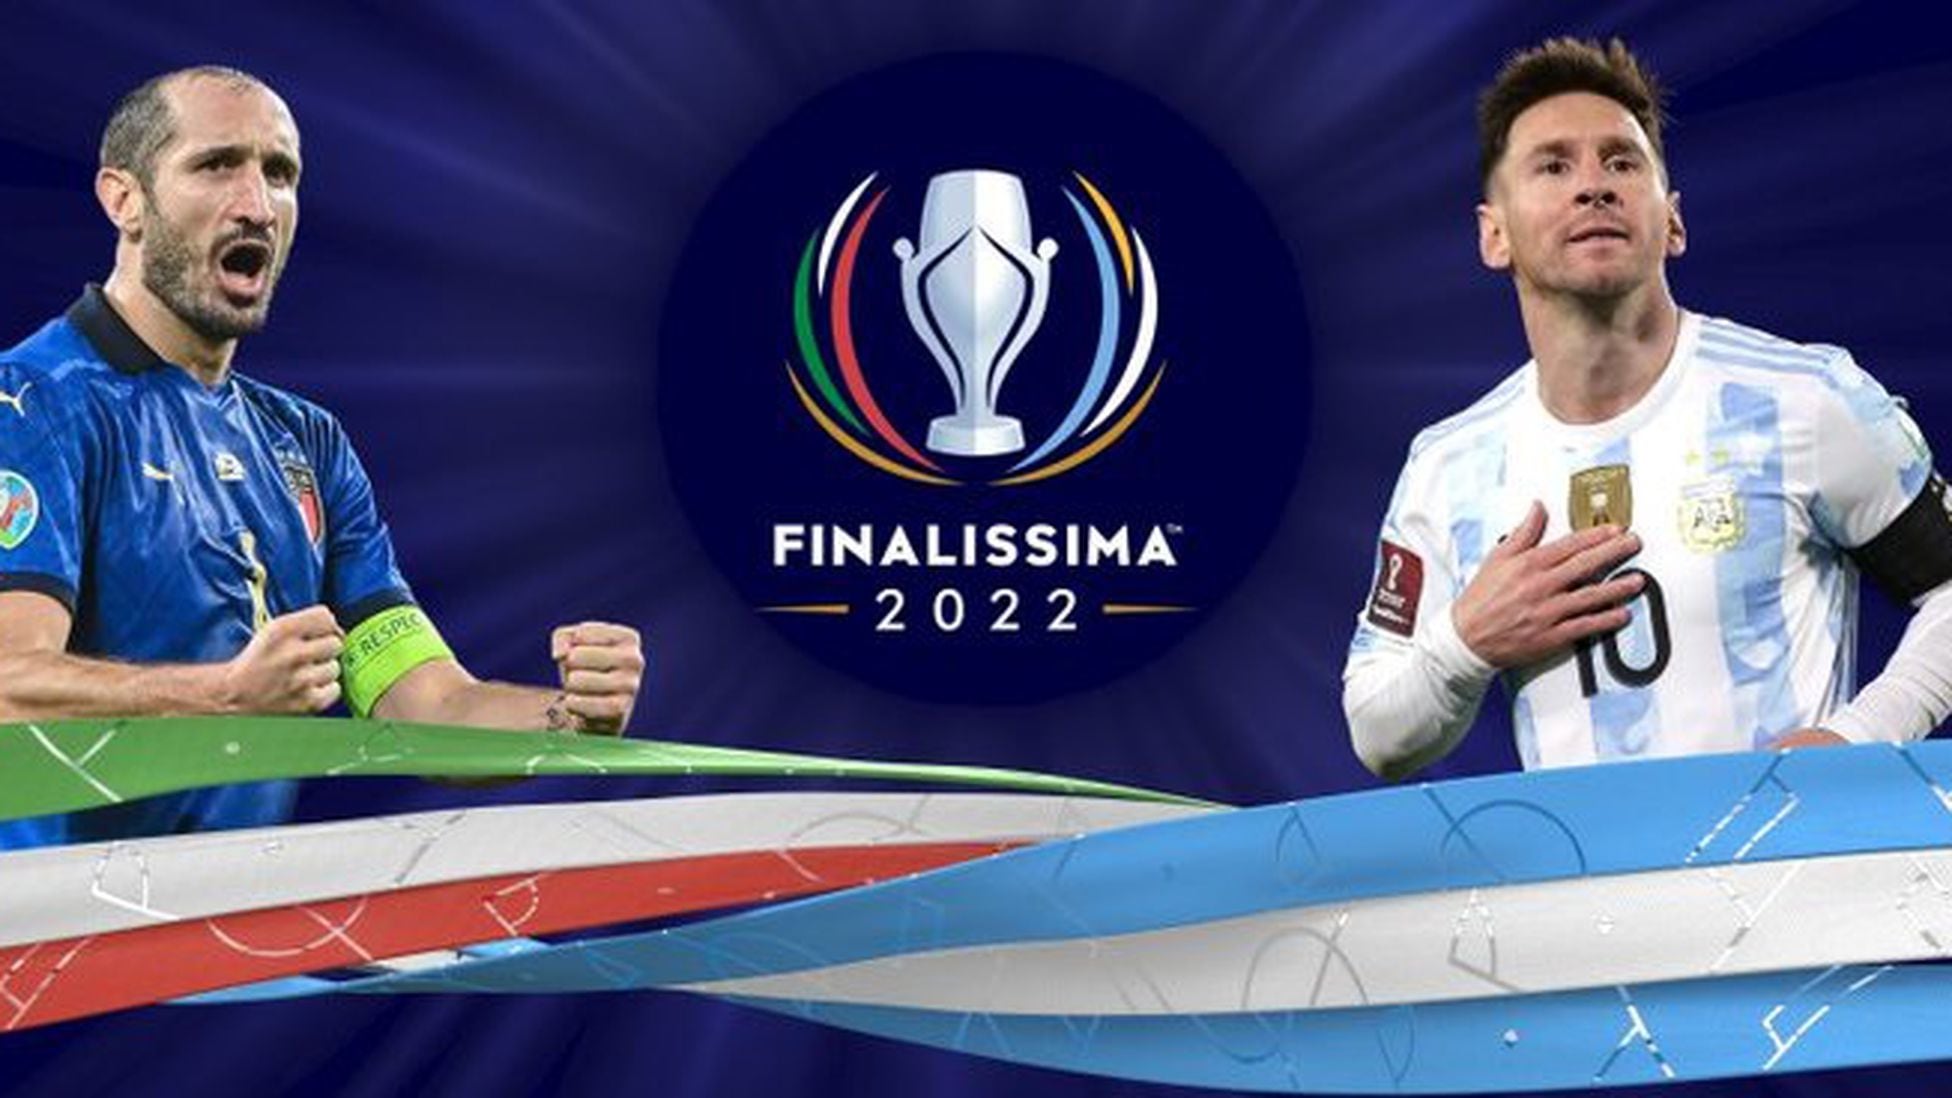 Finalissima 2022: ¿por qué se juega en Wembley y no en Sudamérica? - AS  Argentina